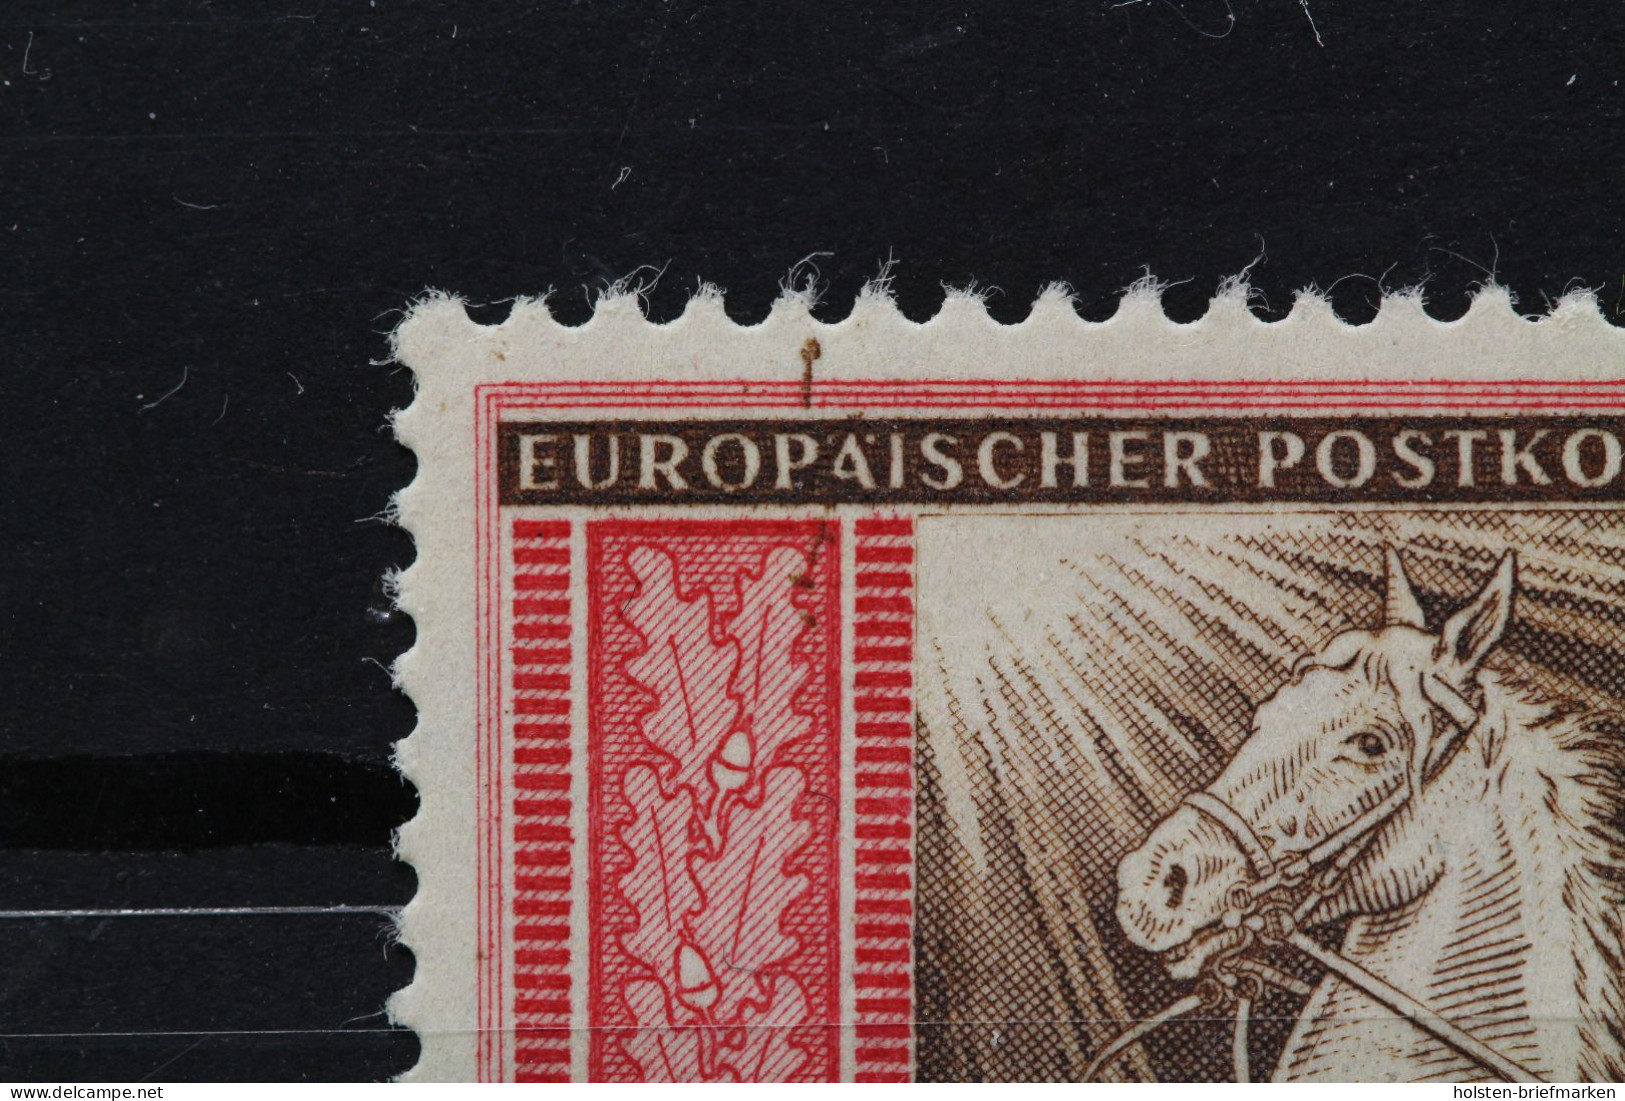 Deutsches Reich, MiNr. 825 PLF I, Postfrisch - Errors & Oddities